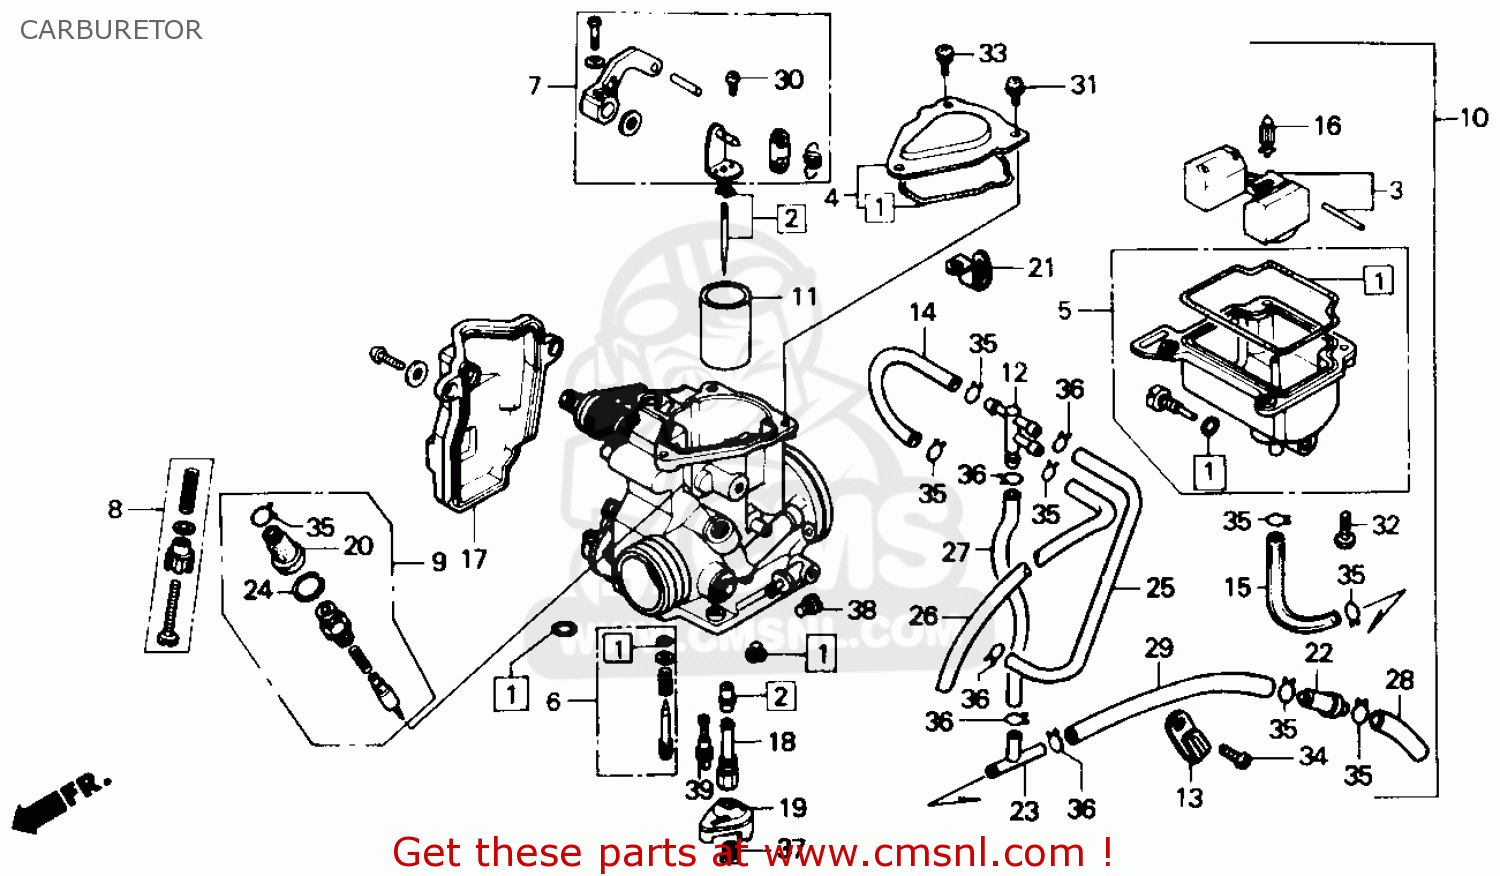 Honda fourtrax carburetor schematics